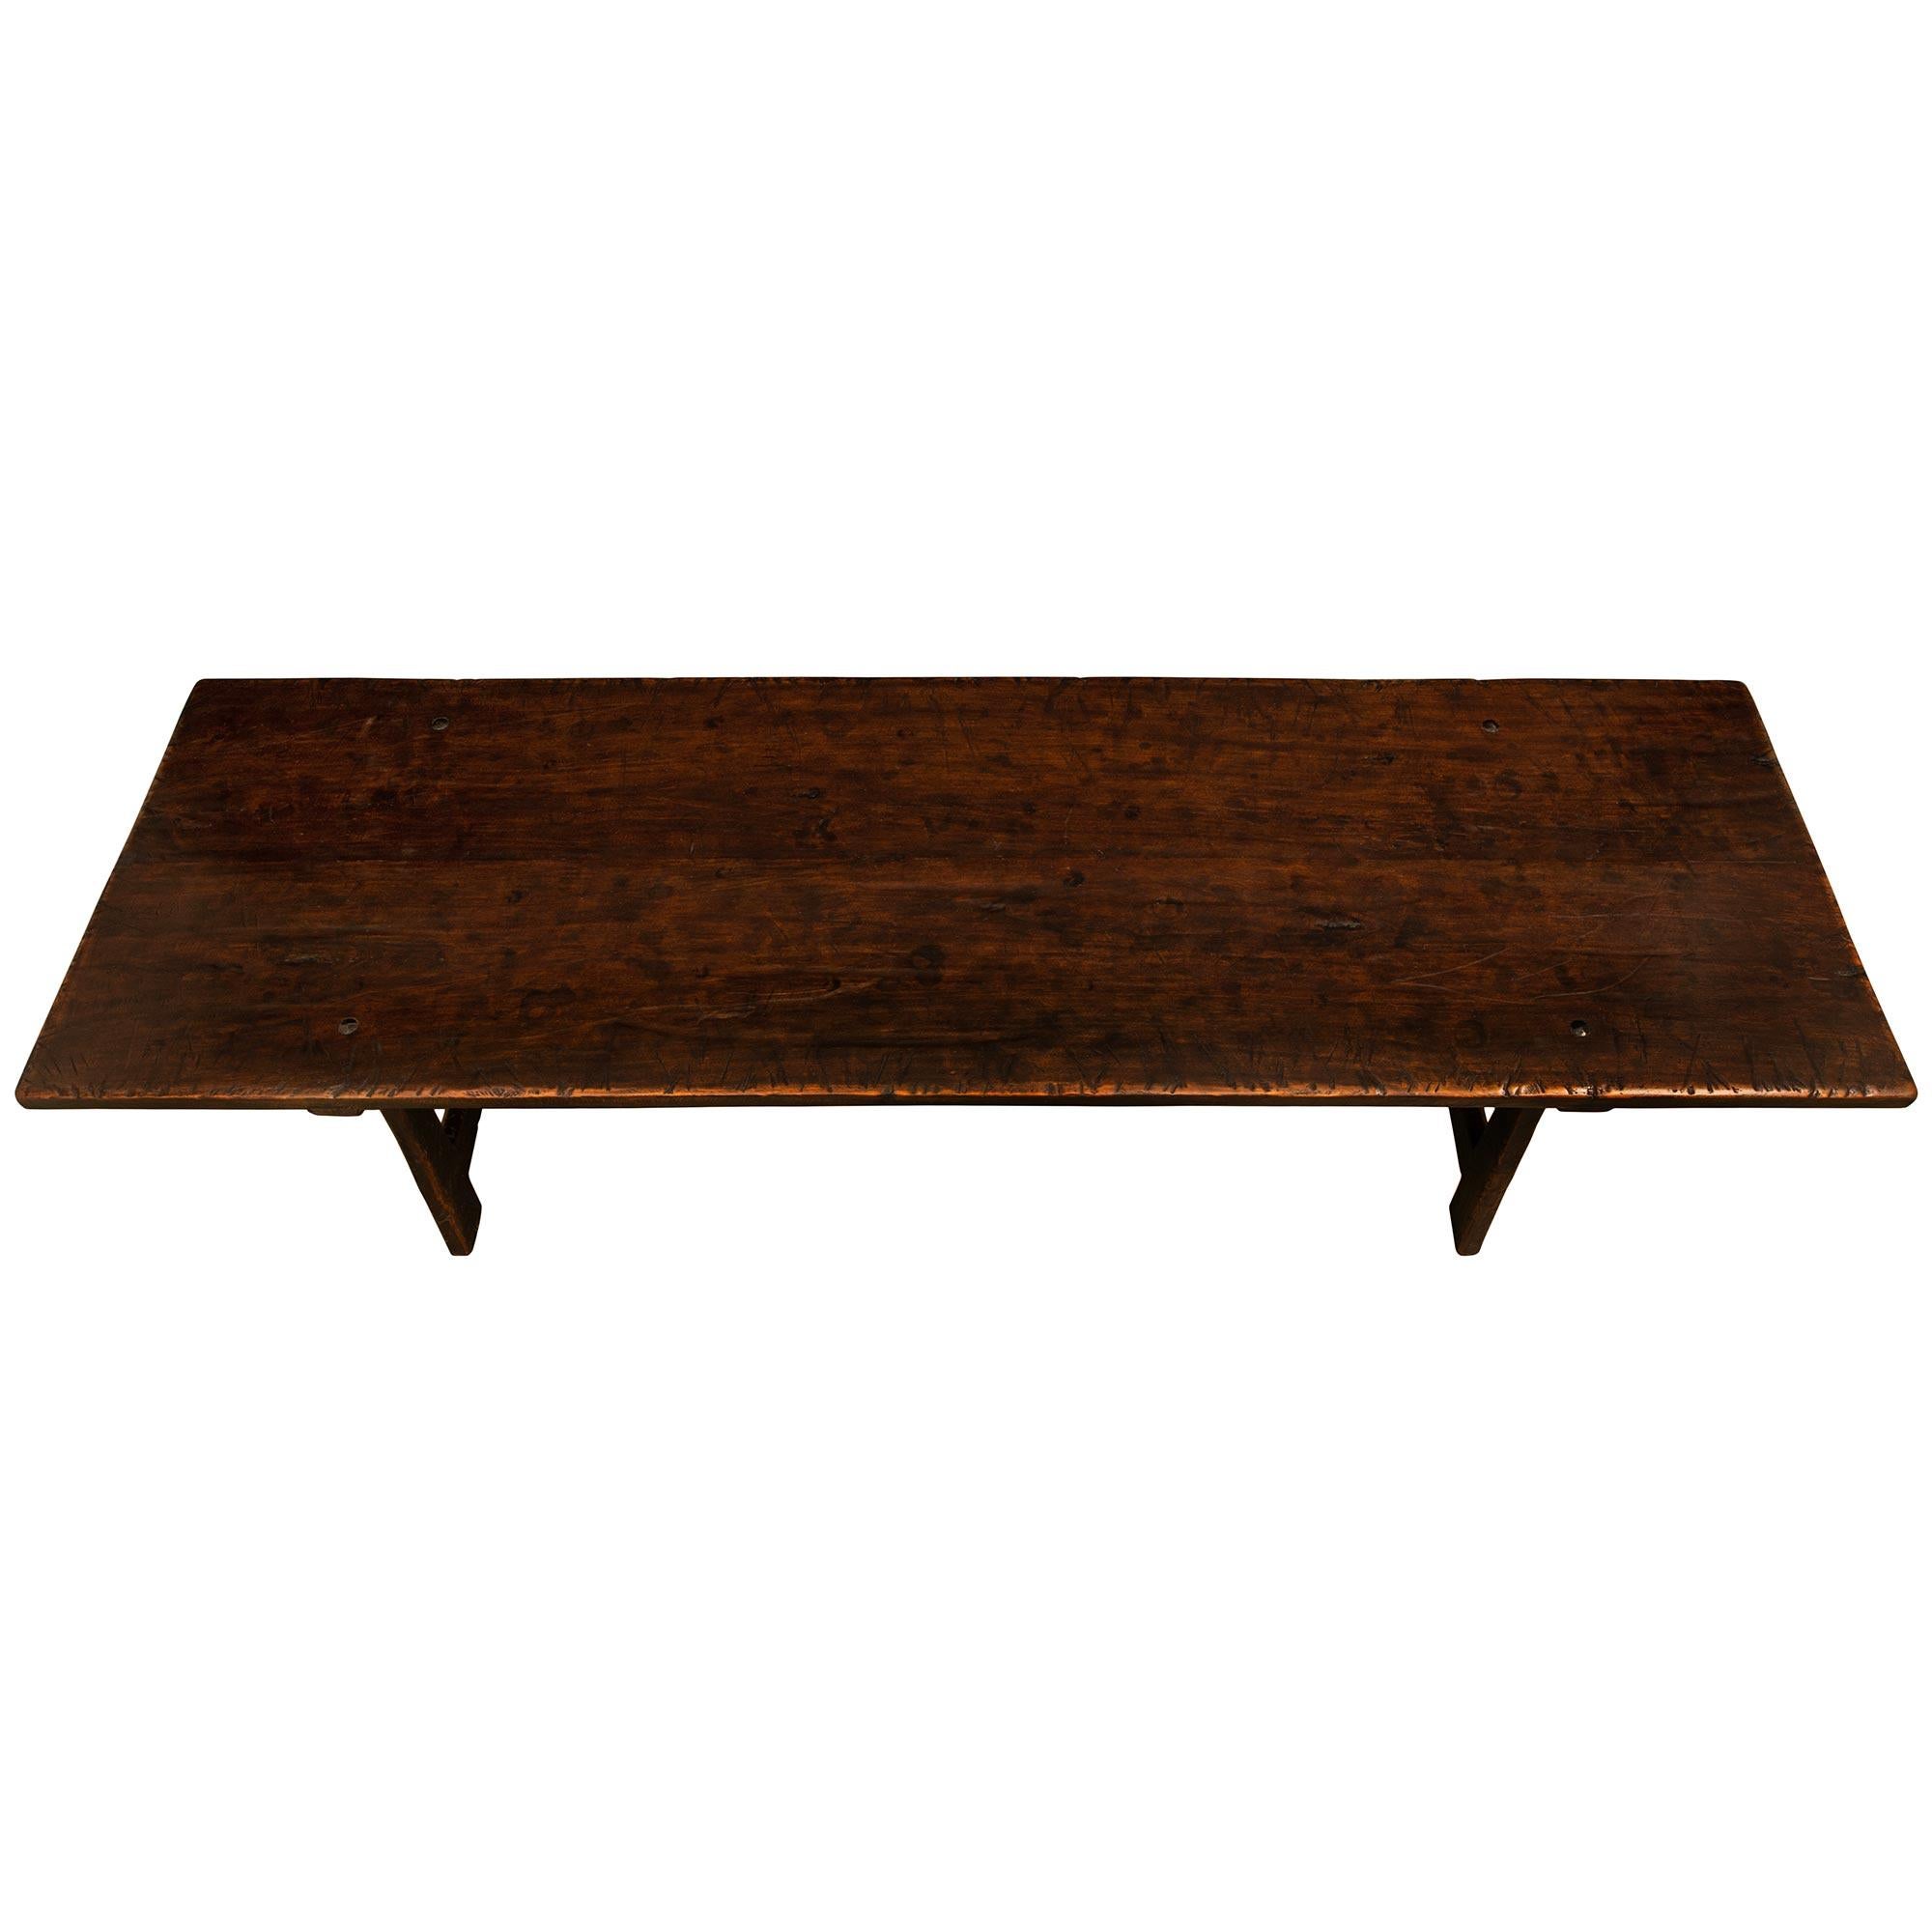 Ein schöner und großformatiger italienischer Nussbaum-Bocktisch aus dem 19. Der Tisch steht auf vier schräg gestellten, sich verjüngenden, rechteckigen Beinen mit geraden und dreieckigen Streckern, die die Beine verbinden. Oben ist die rechteckige